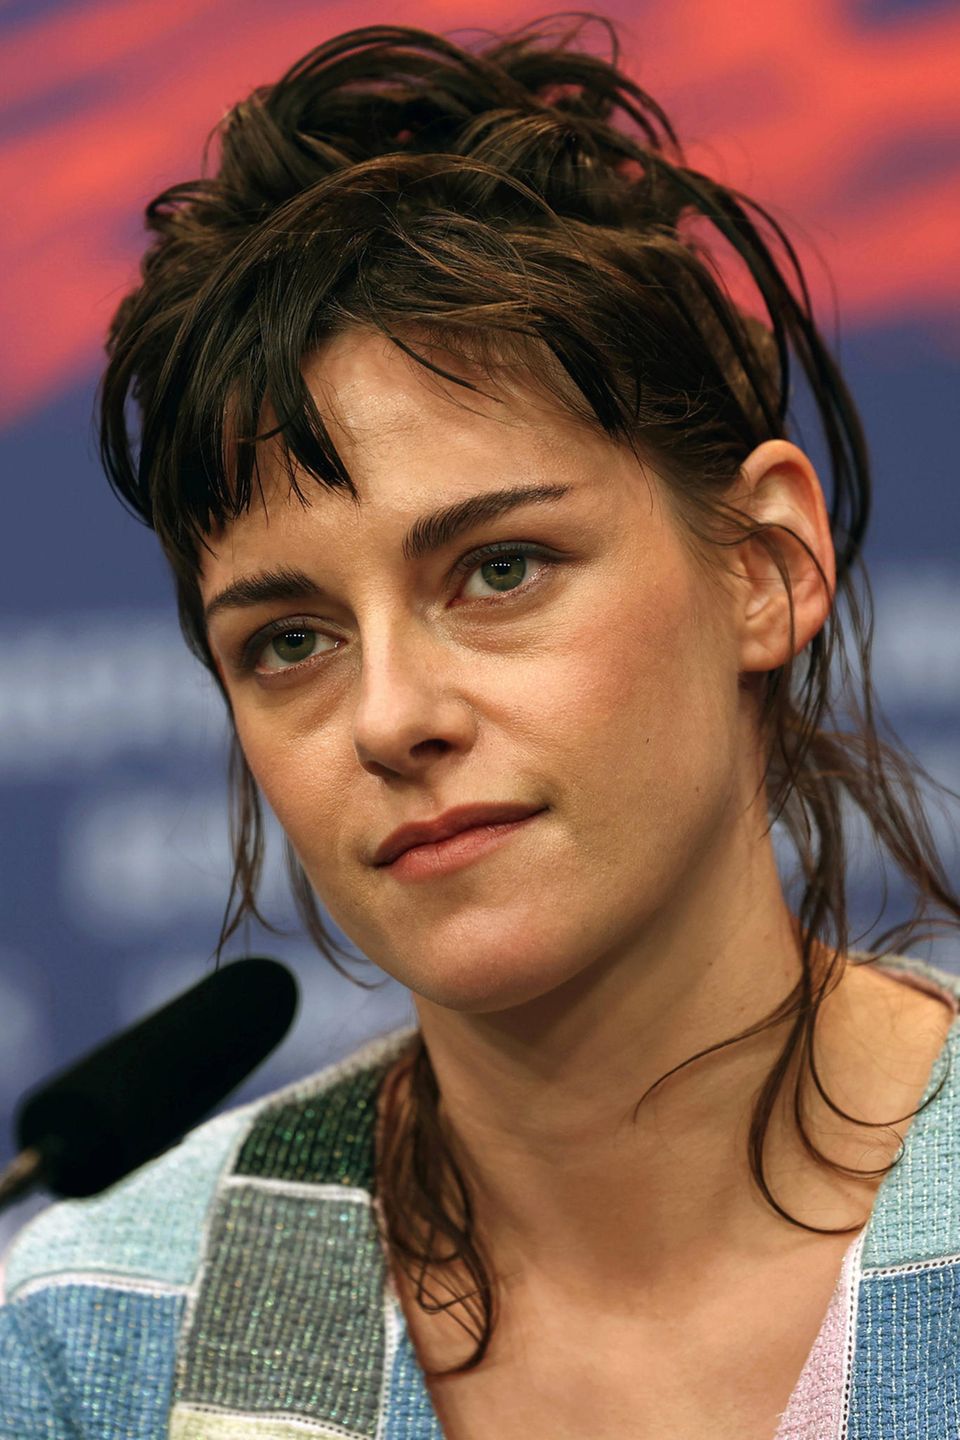 Kristen Stewart erlangte ab 2008 als blass-zarte Bella Swan in den "Twilight"-Filmen Weltruhm, eine Rolle, von der sie sich längst gelöst hat, ihre Ausstrahlung ist mittlerweile ernsthaft und beeindruckend charaktervoll.